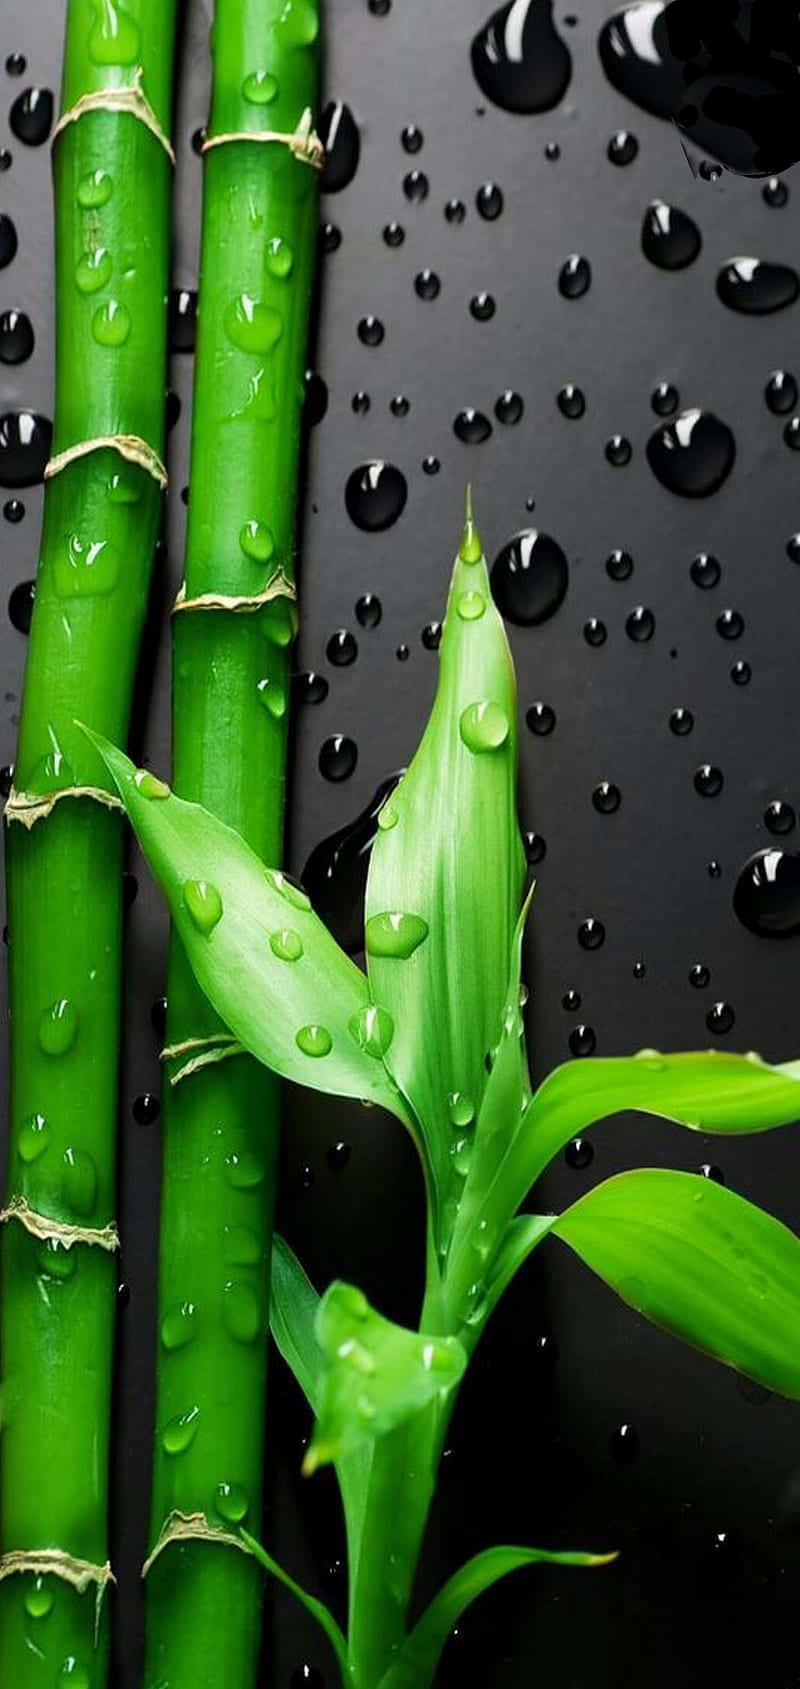 Folhasde Bambu Com Gotas D'água Em Um Fundo Preto. Papel de Parede